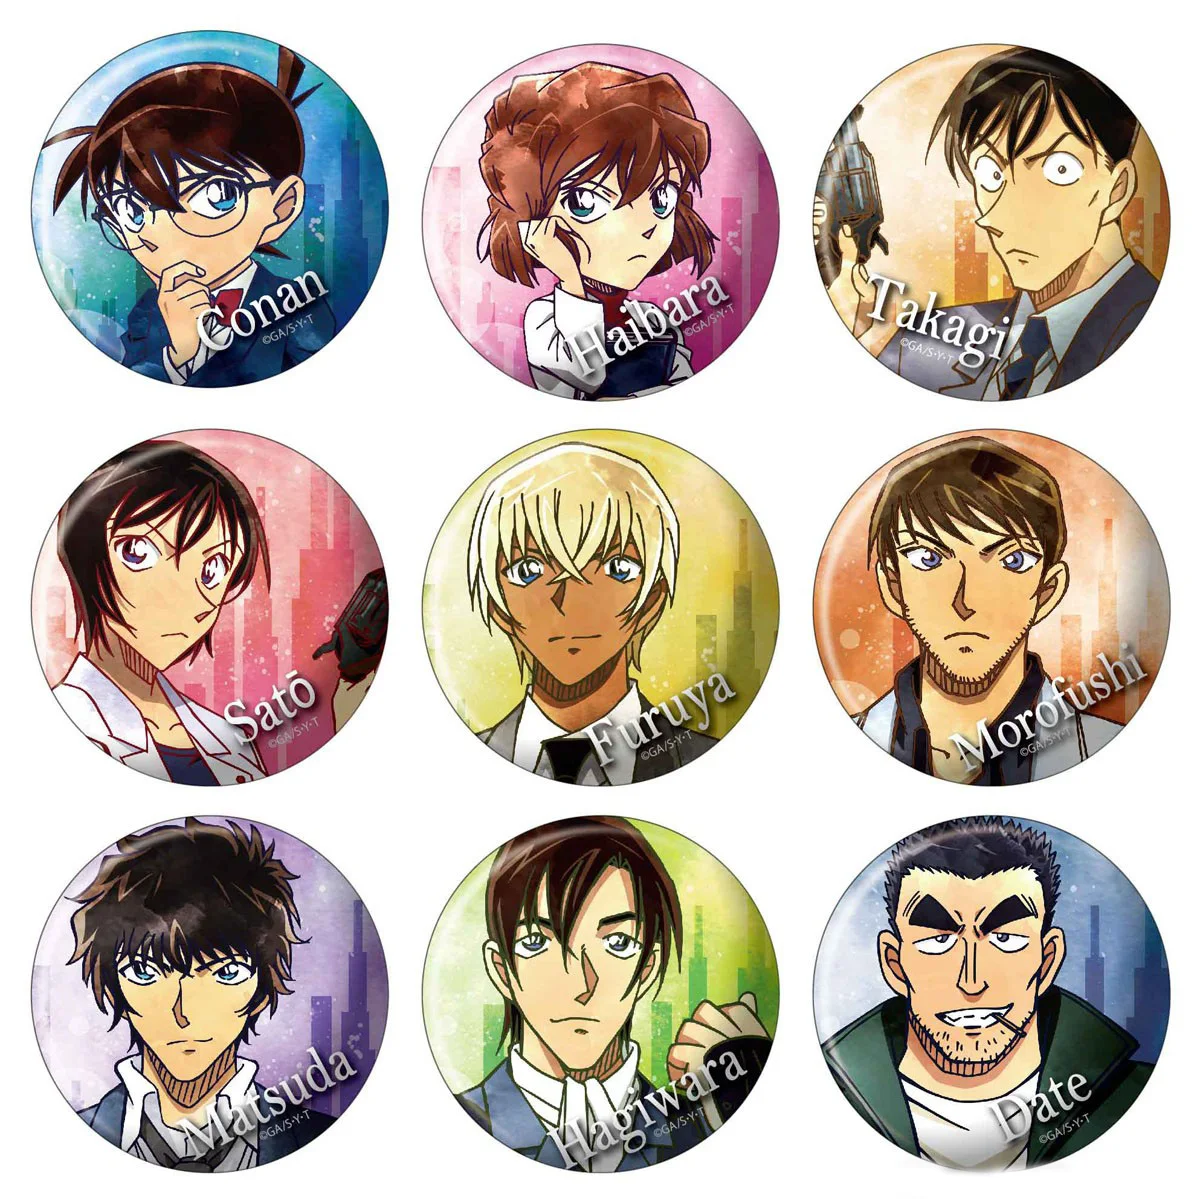 

9pcs/1lot Anime Furuya Rei Date Sato Takagi Figure 3687 Metal Badges Round Brooch Pin Badge Bedge Gift Kids Toy